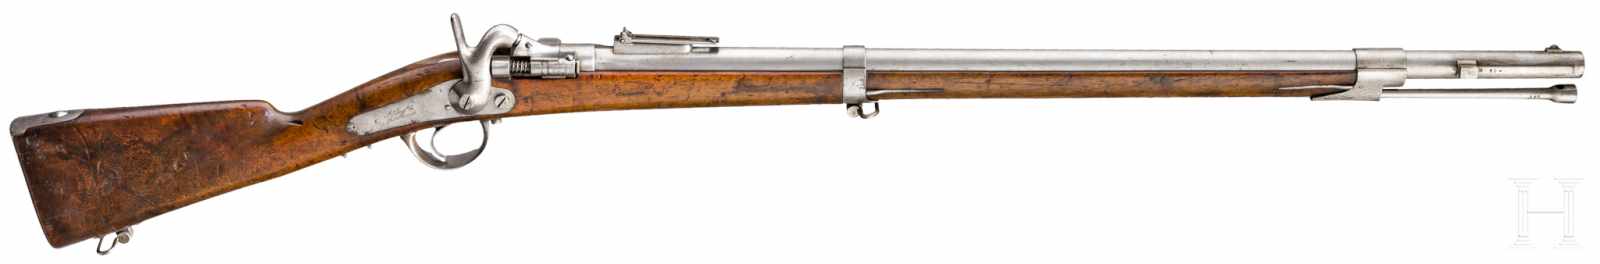 Jägerkarabiner M 1867 "à tabatière"Kal. 18 mm, Nr. 597, Gezogener Lauf, auf der Oberseite